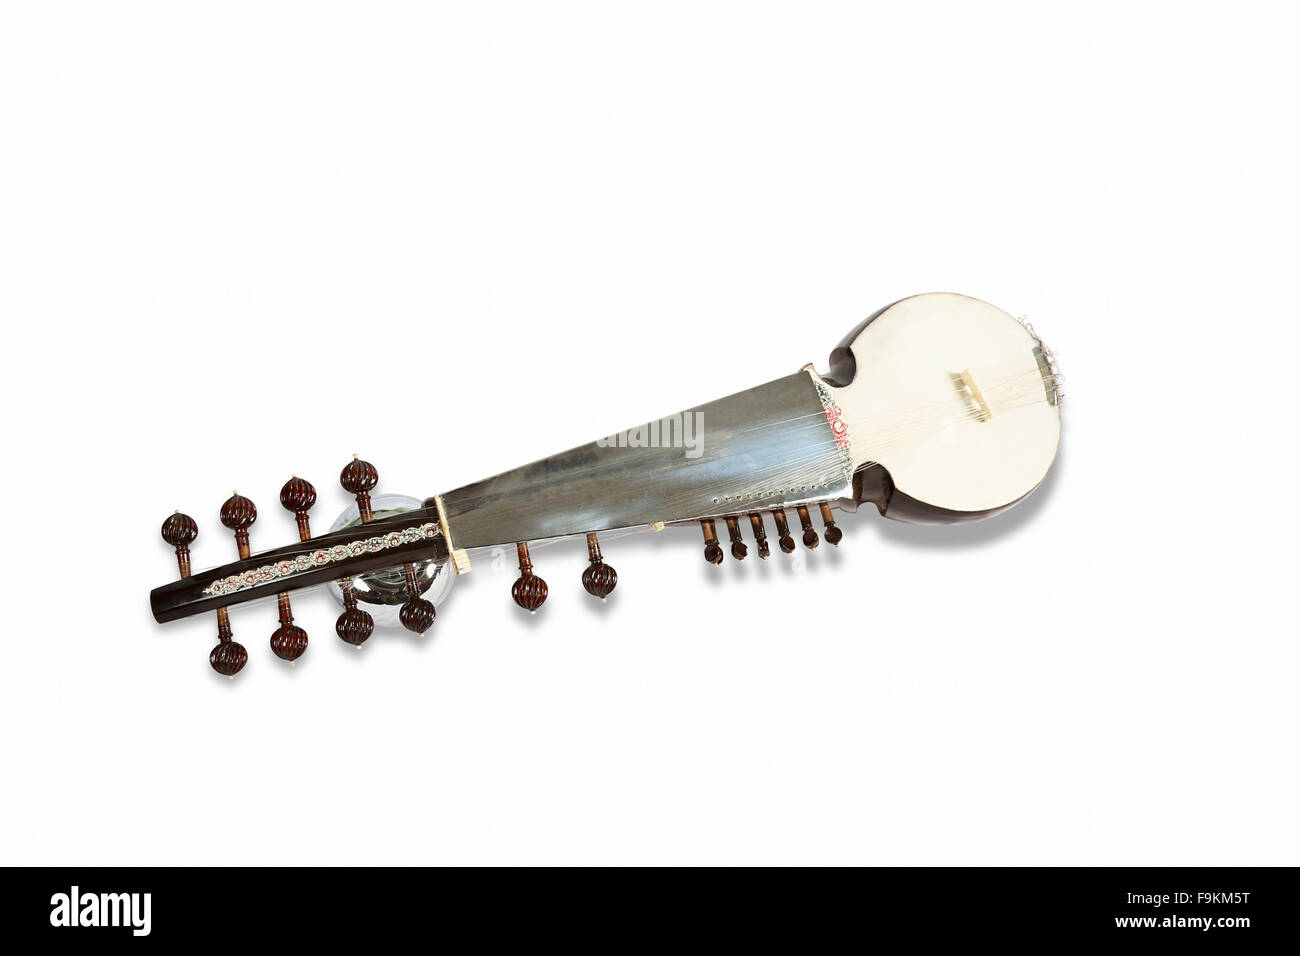 Le Sarod, un instrument à cordes de musique classique populaire de l'Inde. Banque D'Images